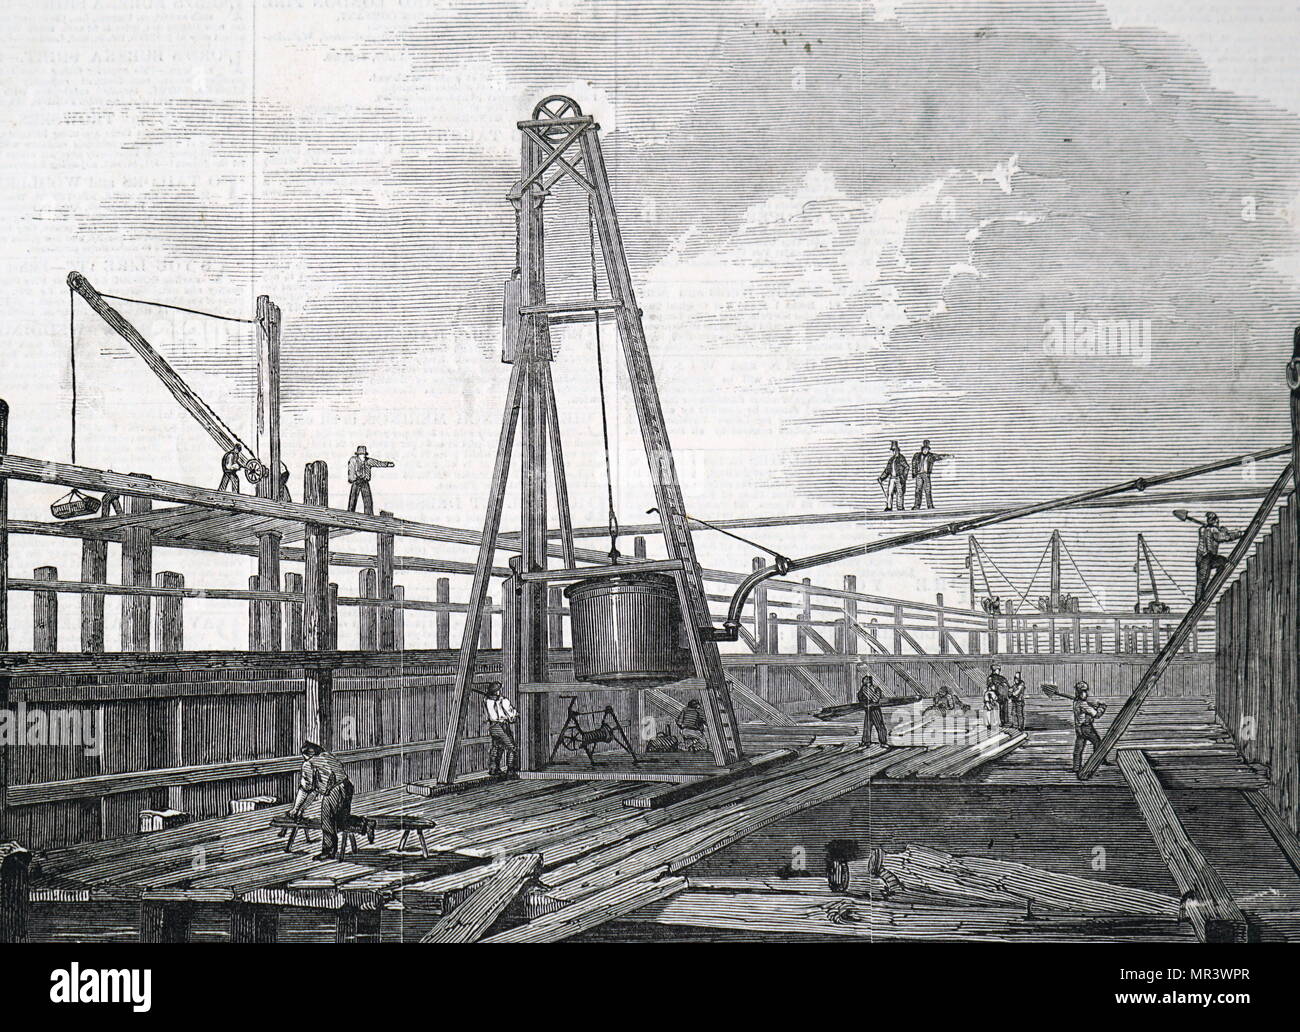 Abbildung: Darstellung Clarke & Varley's atmosphärischer Rammen Maschine. Eine Dampfmaschine wurde verwendet, um die Luft aus dem Zylinder zu Pumpen, mit dem Ergebnis, dass der atmosphärische Druck den Kolben nach unten gedrückt. Die Abwärtsbewegung des Kolbens hob das Gewicht für Sie bereit. Vom 19. Jahrhundert Stockfoto